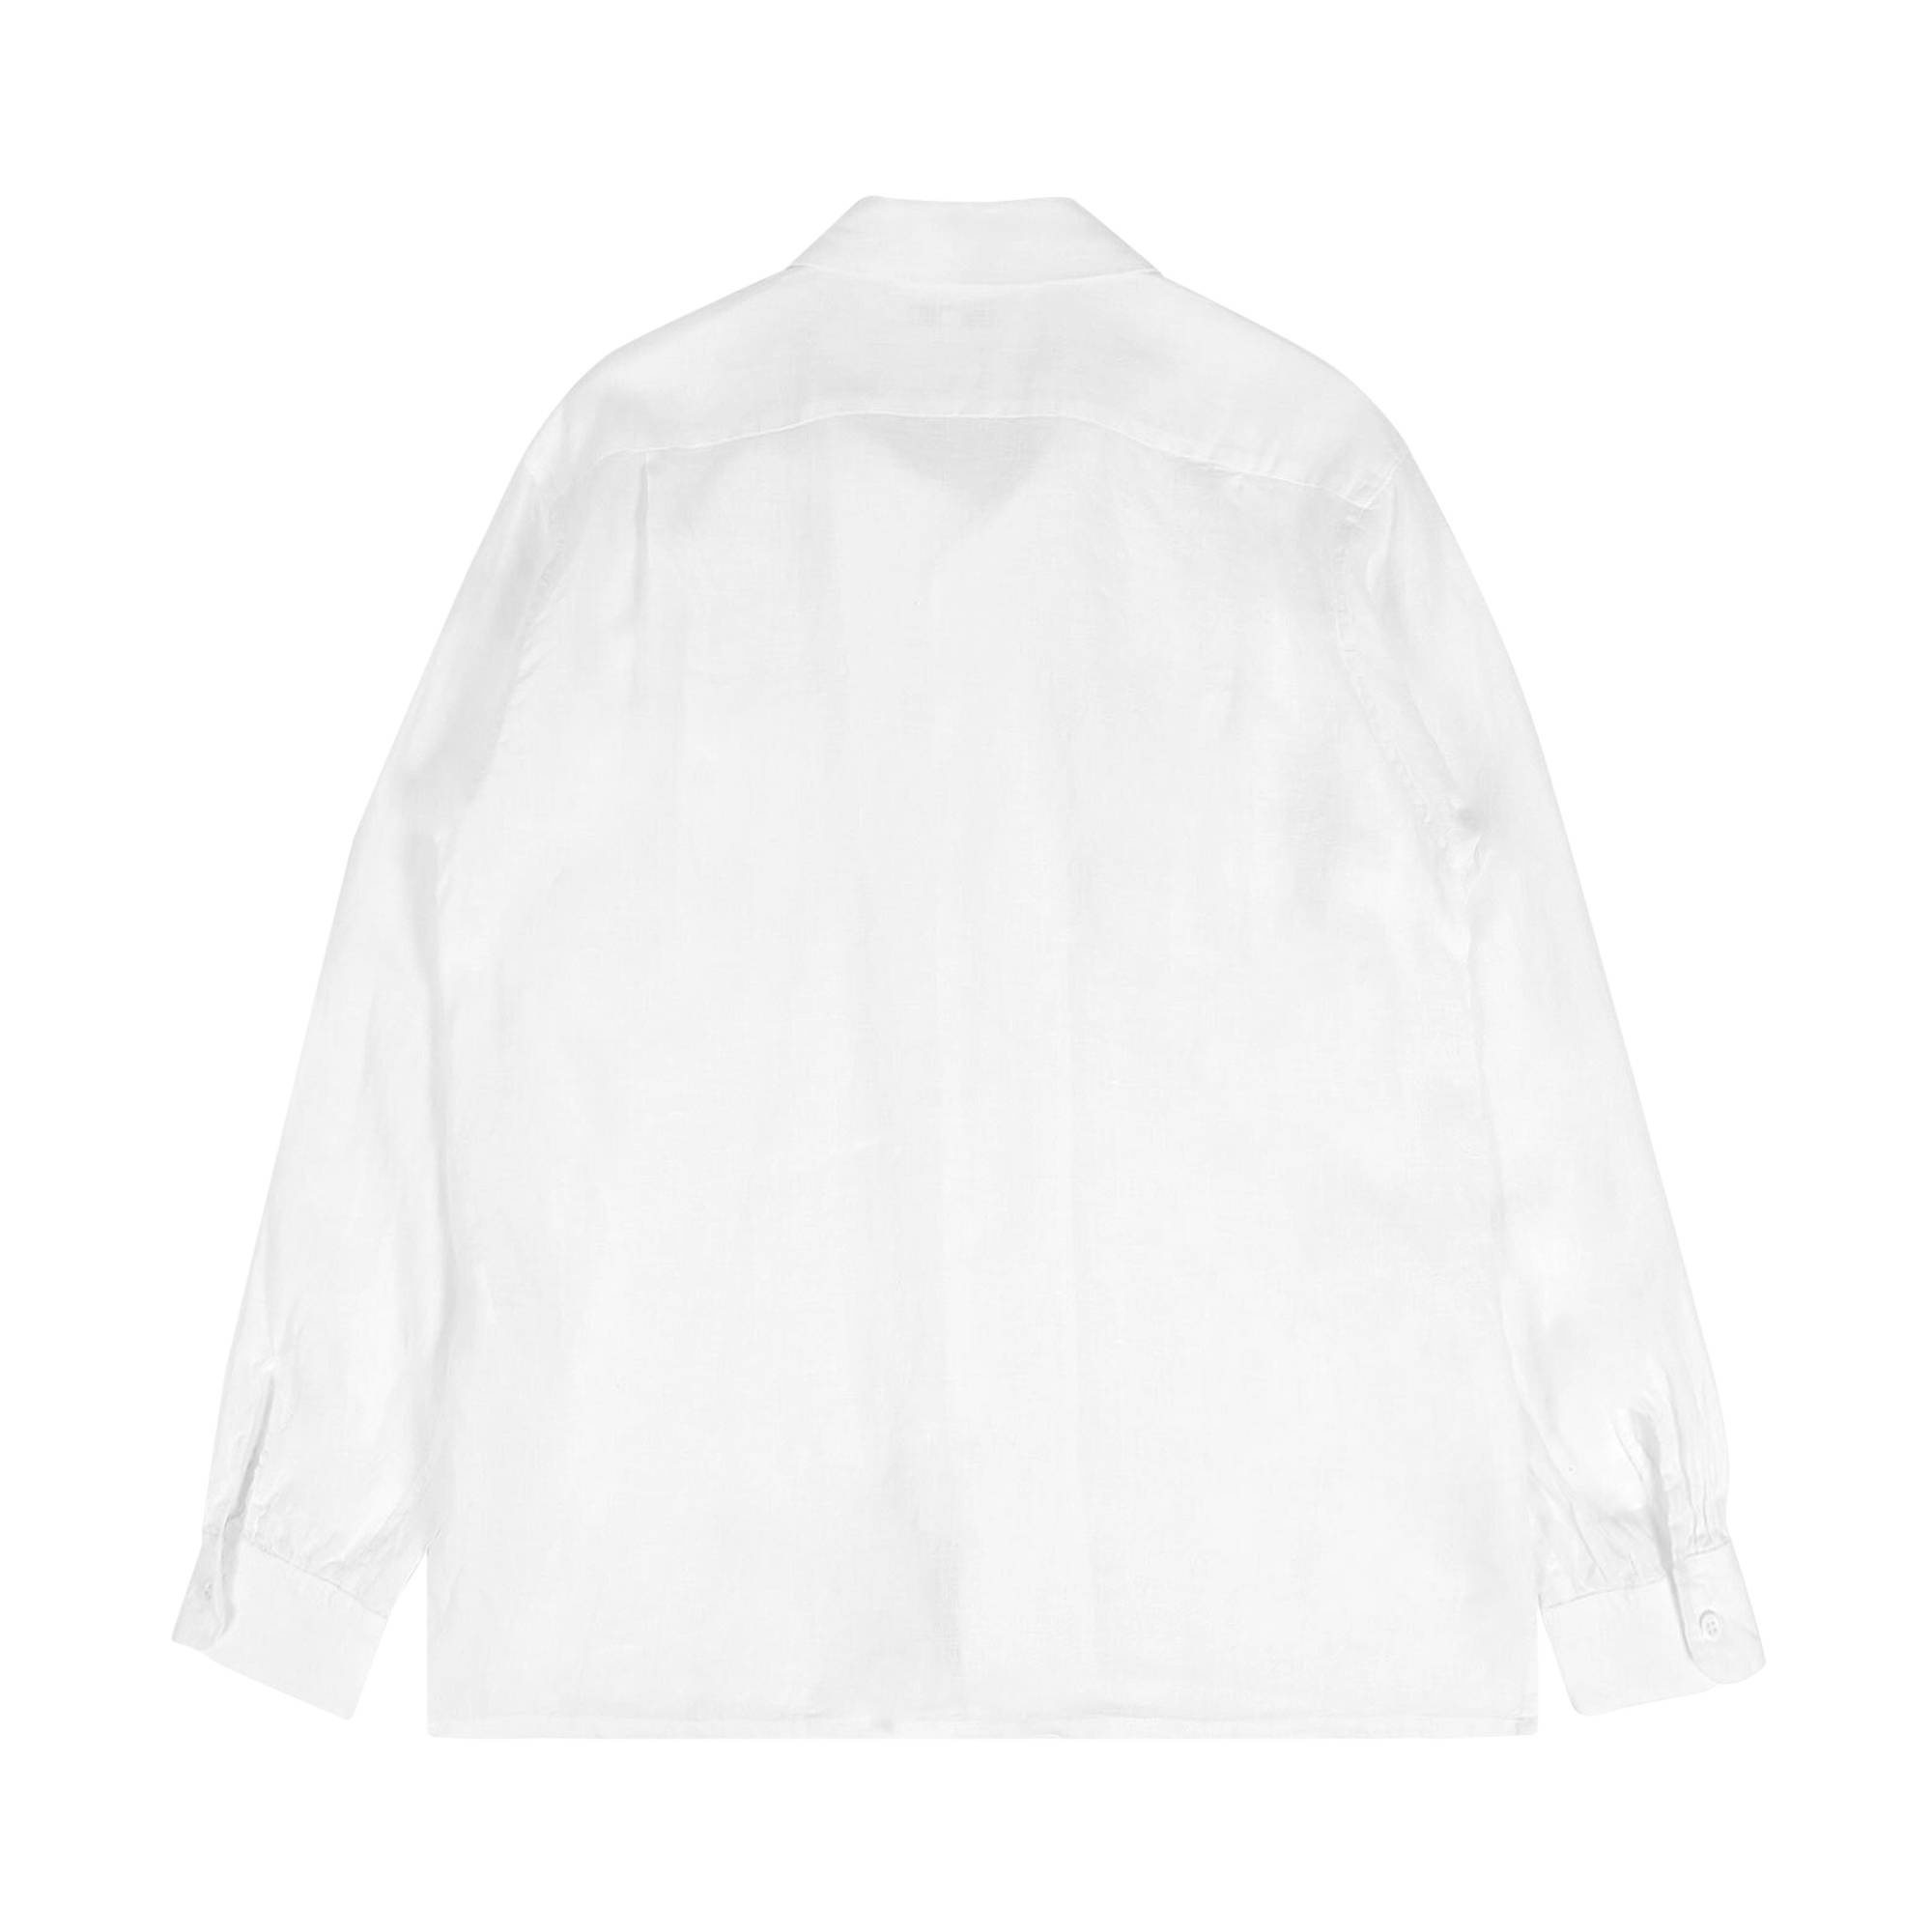 Engineered Garments Handkerchief Shirt 'White' - 2